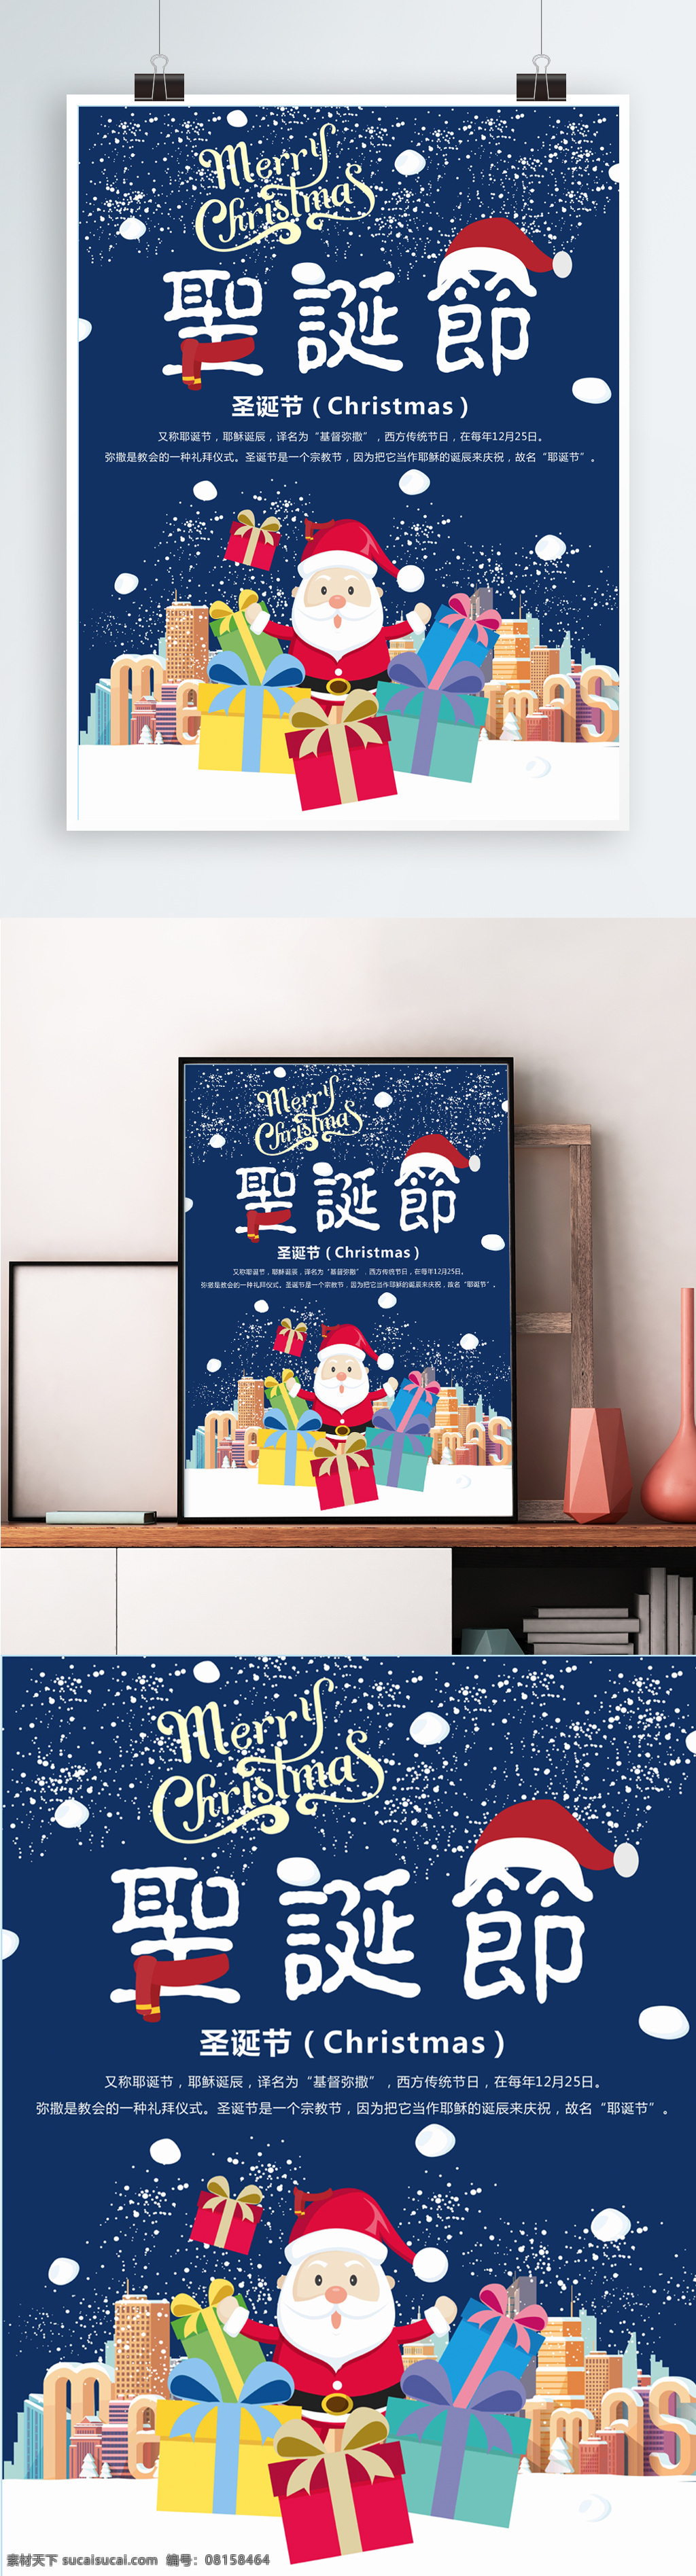 圣诞节 节日 介绍 简约 可爱 海报 雪花 圣诞老人 蓝色 节日介绍 节日庆典海报